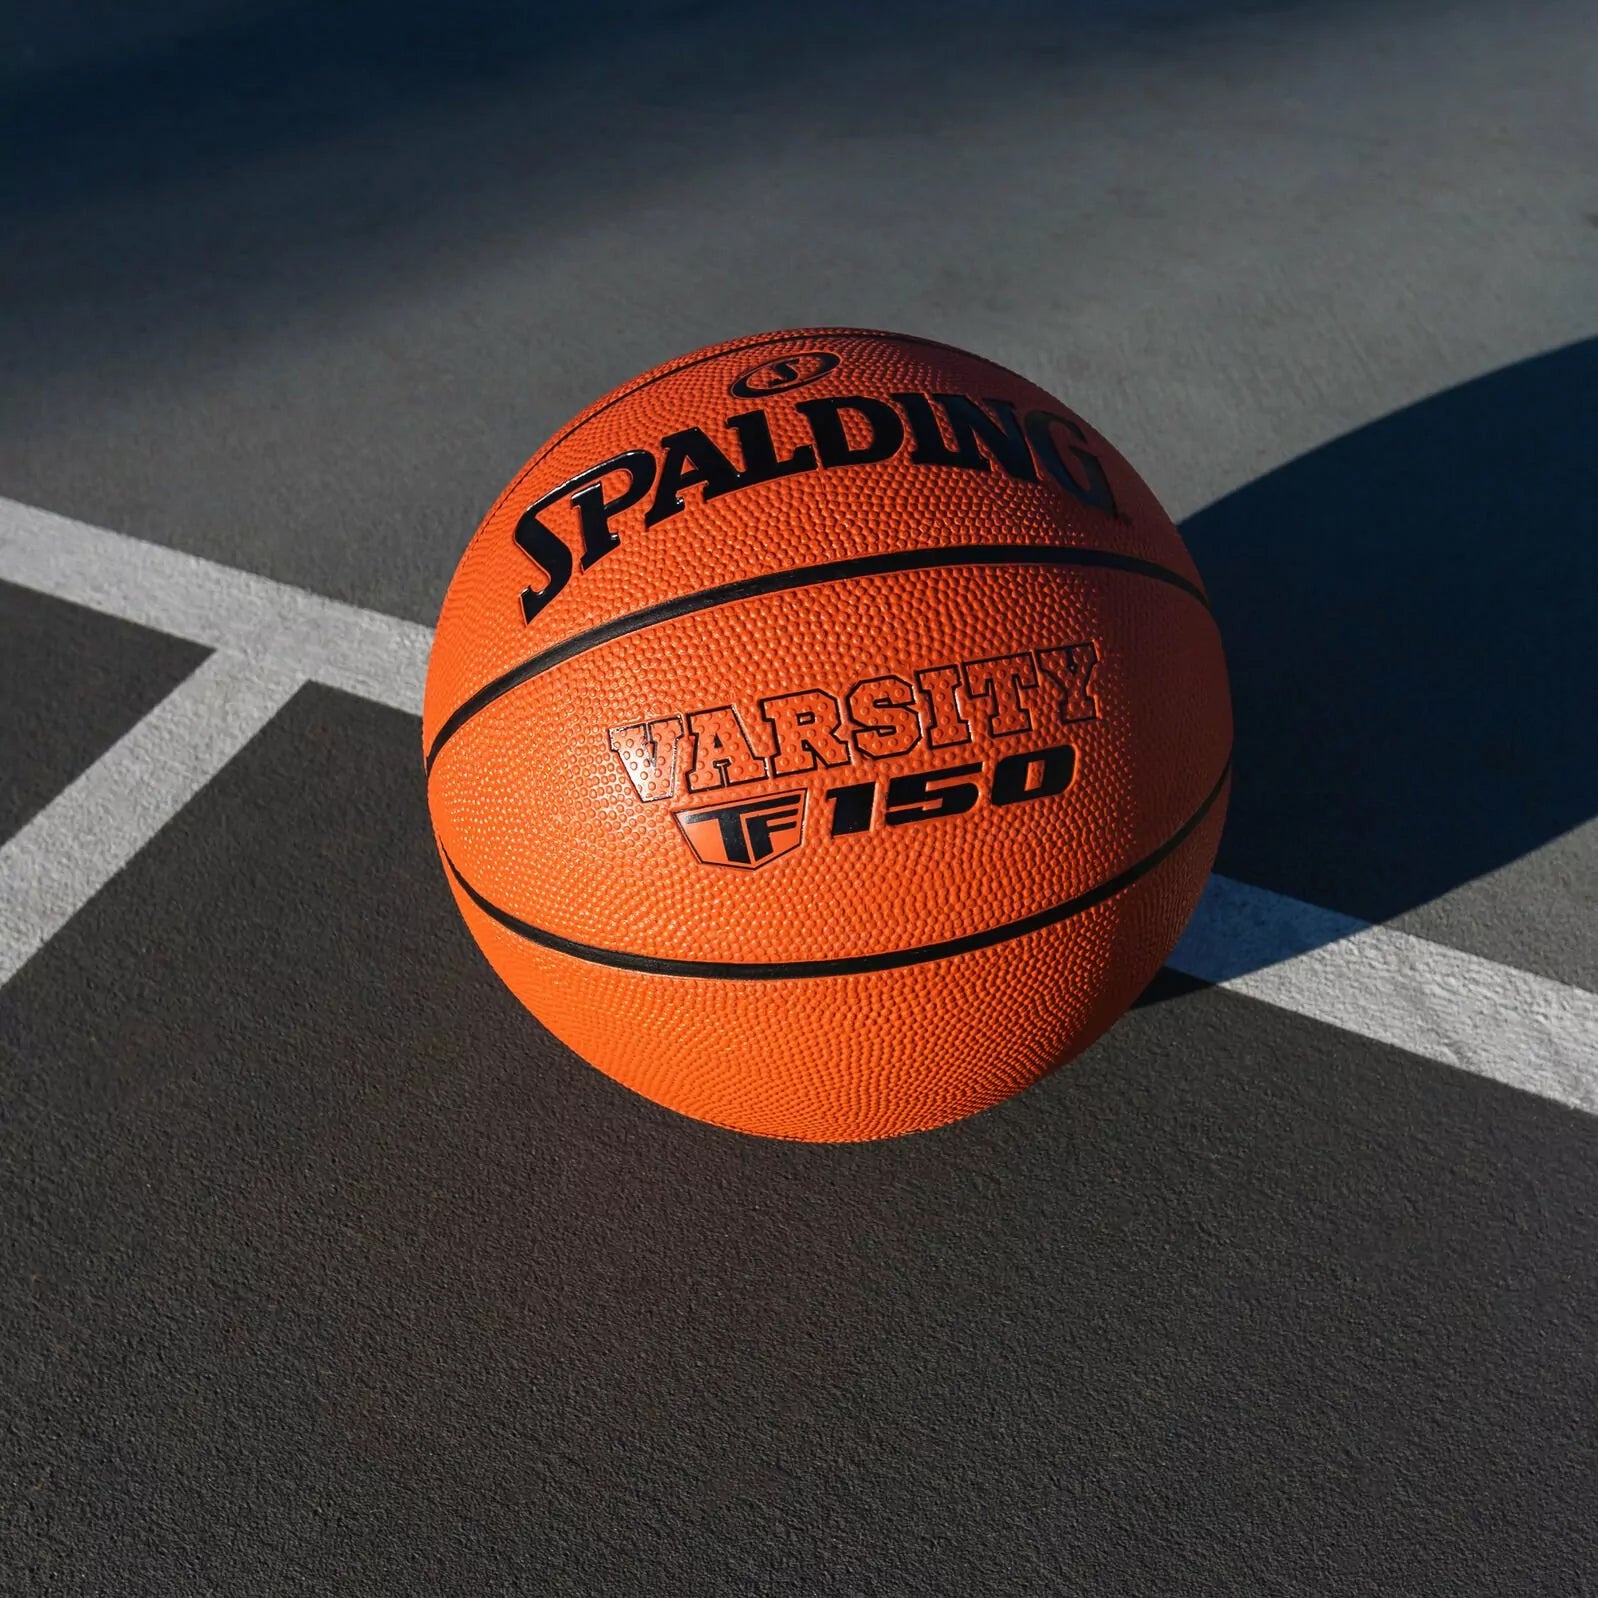 Spalding Varsity FIBA TF-150 Rubber Basketball, Size 7 (Brick) - Best Price online Prokicksports.com